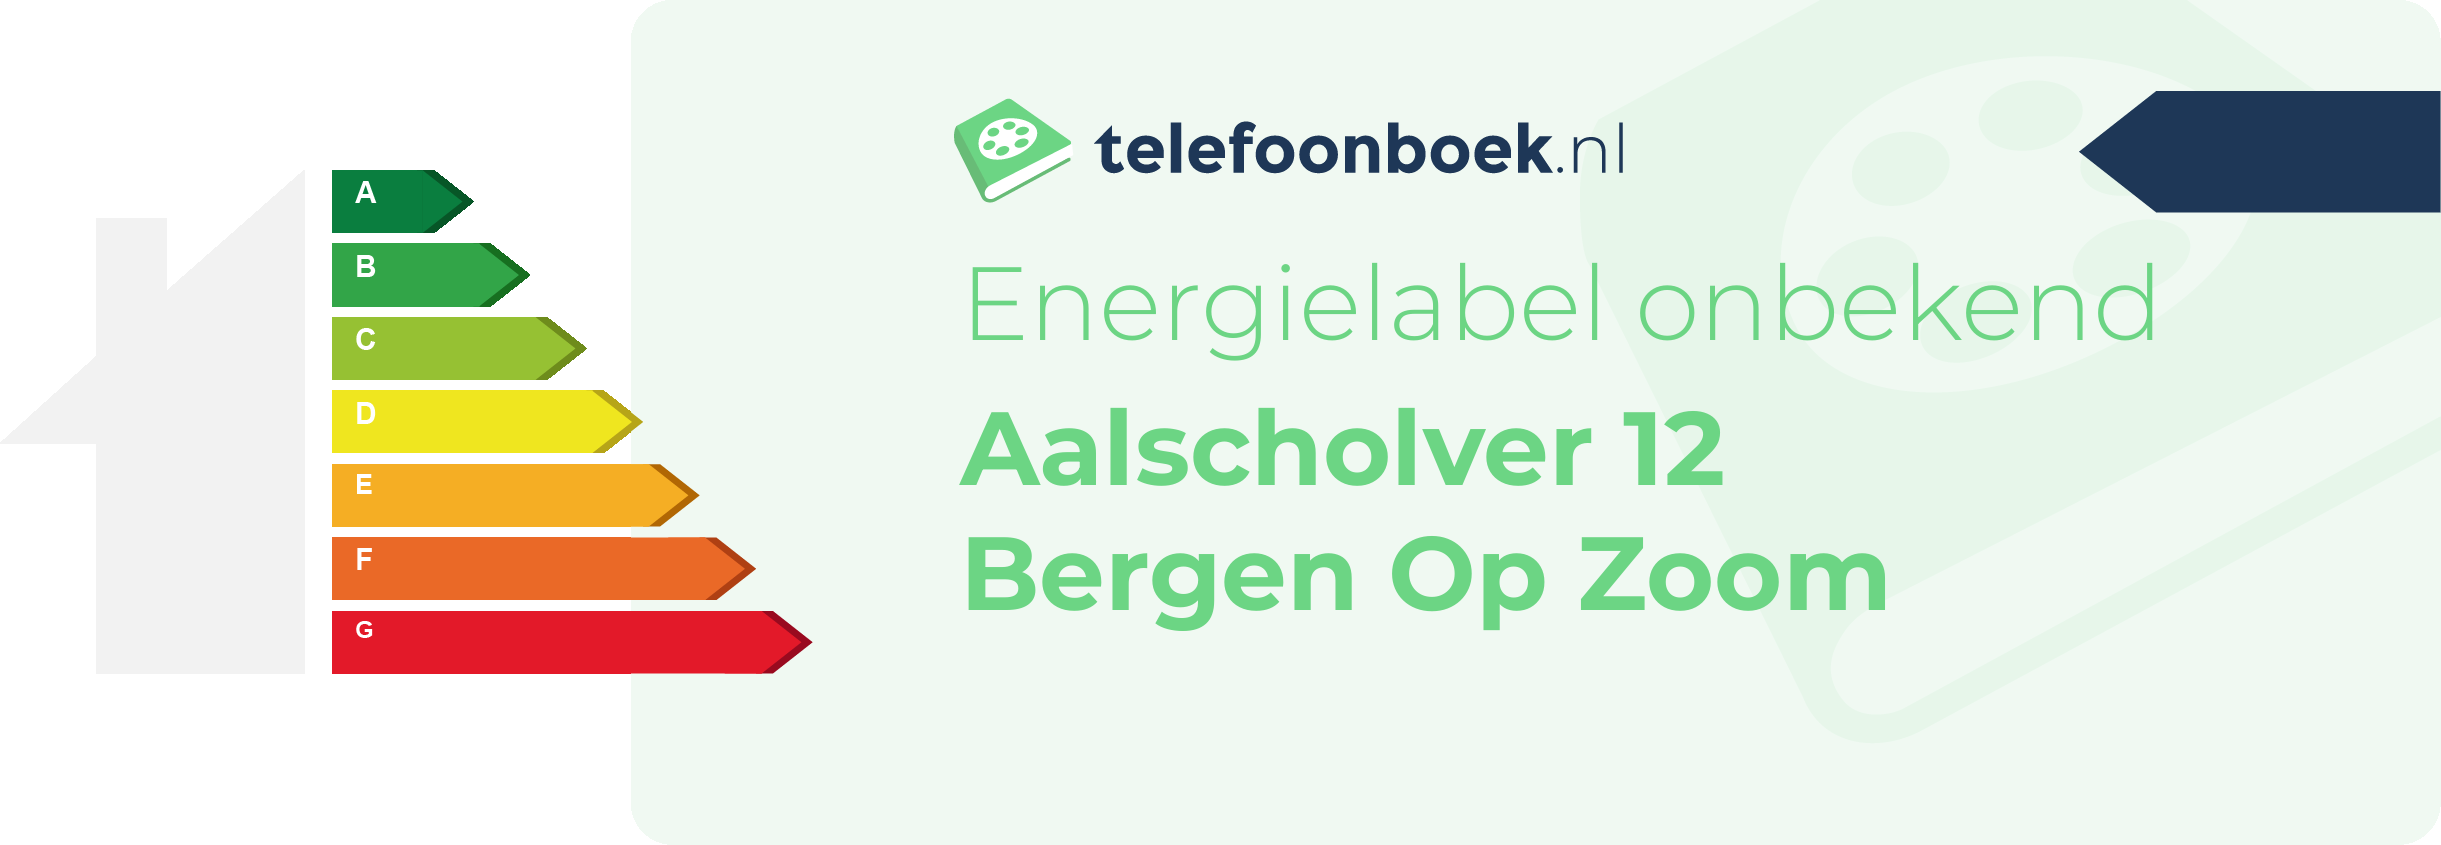 Energielabel Aalscholver 12 Bergen Op Zoom